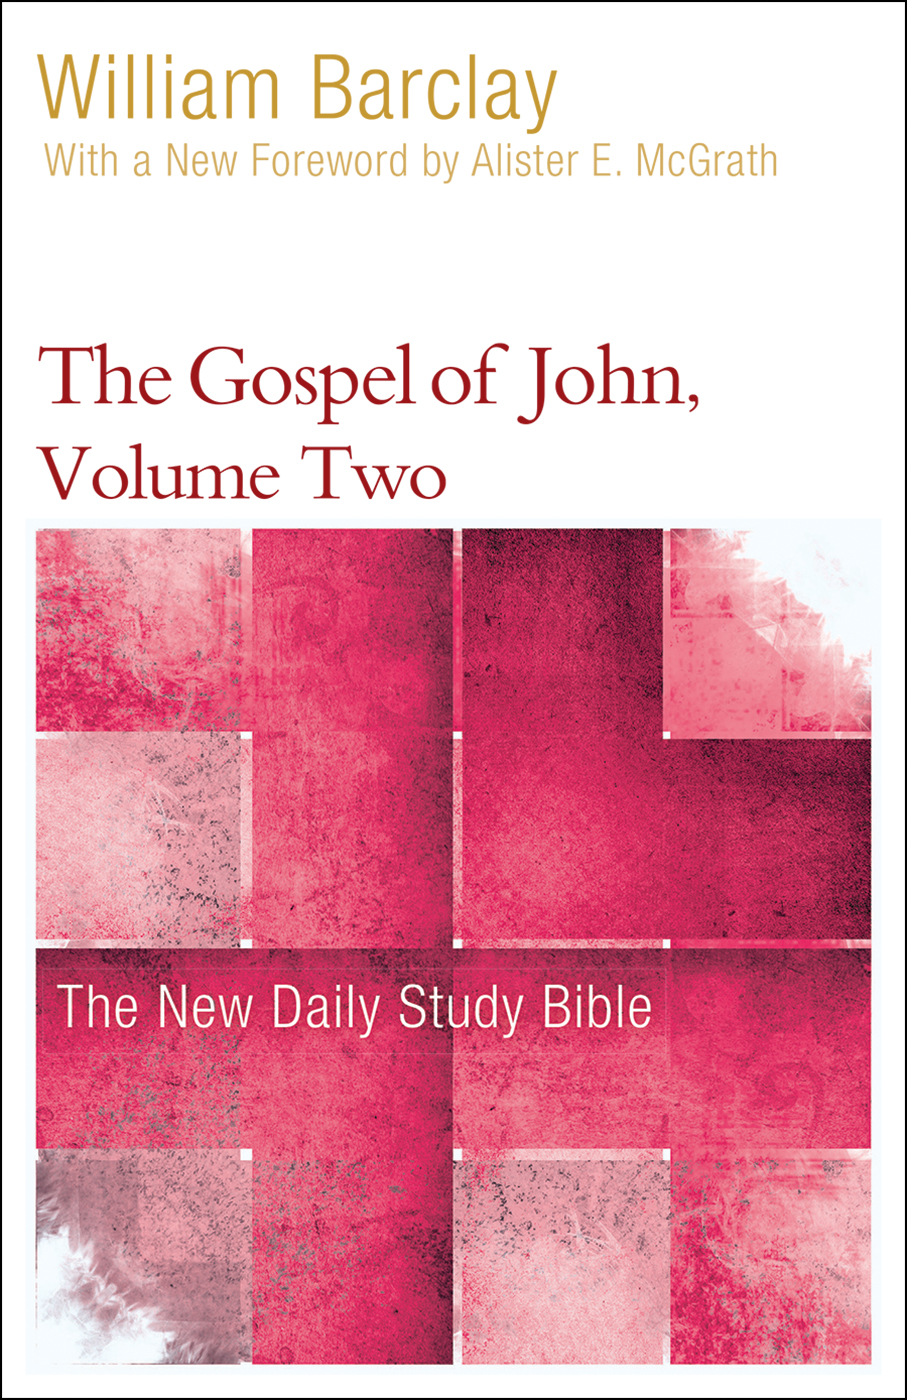 The Gospel of John, Volume Two